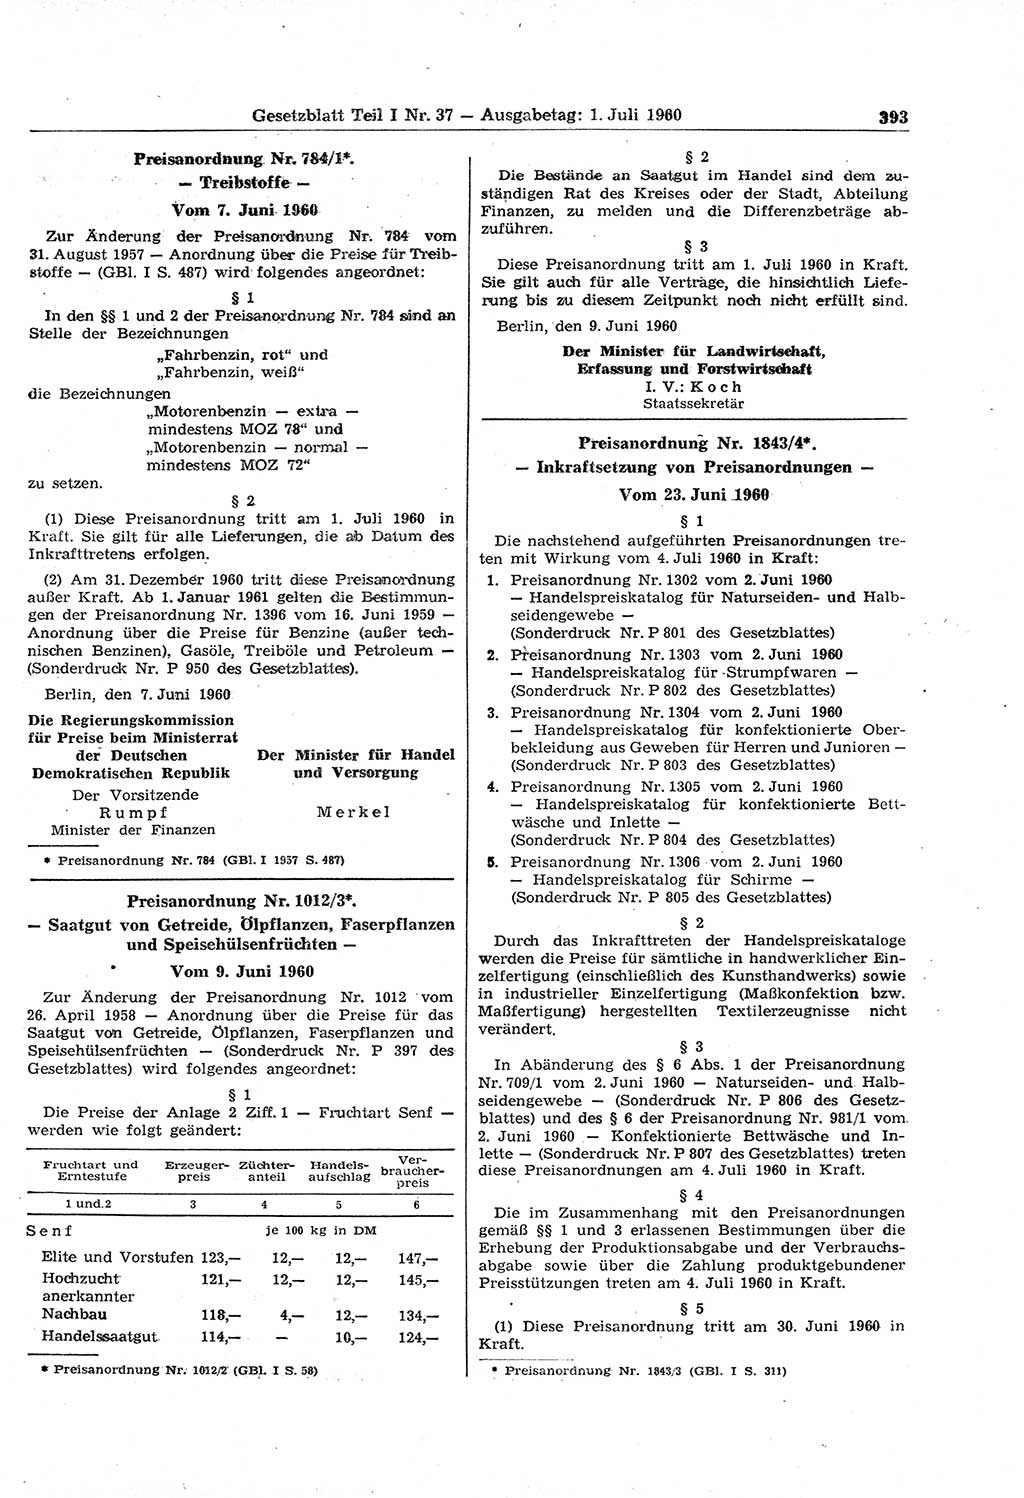 Gesetzblatt (GBl.) der Deutschen Demokratischen Republik (DDR) Teil Ⅰ 1960, Seite 393 (GBl. DDR Ⅰ 1960, S. 393)